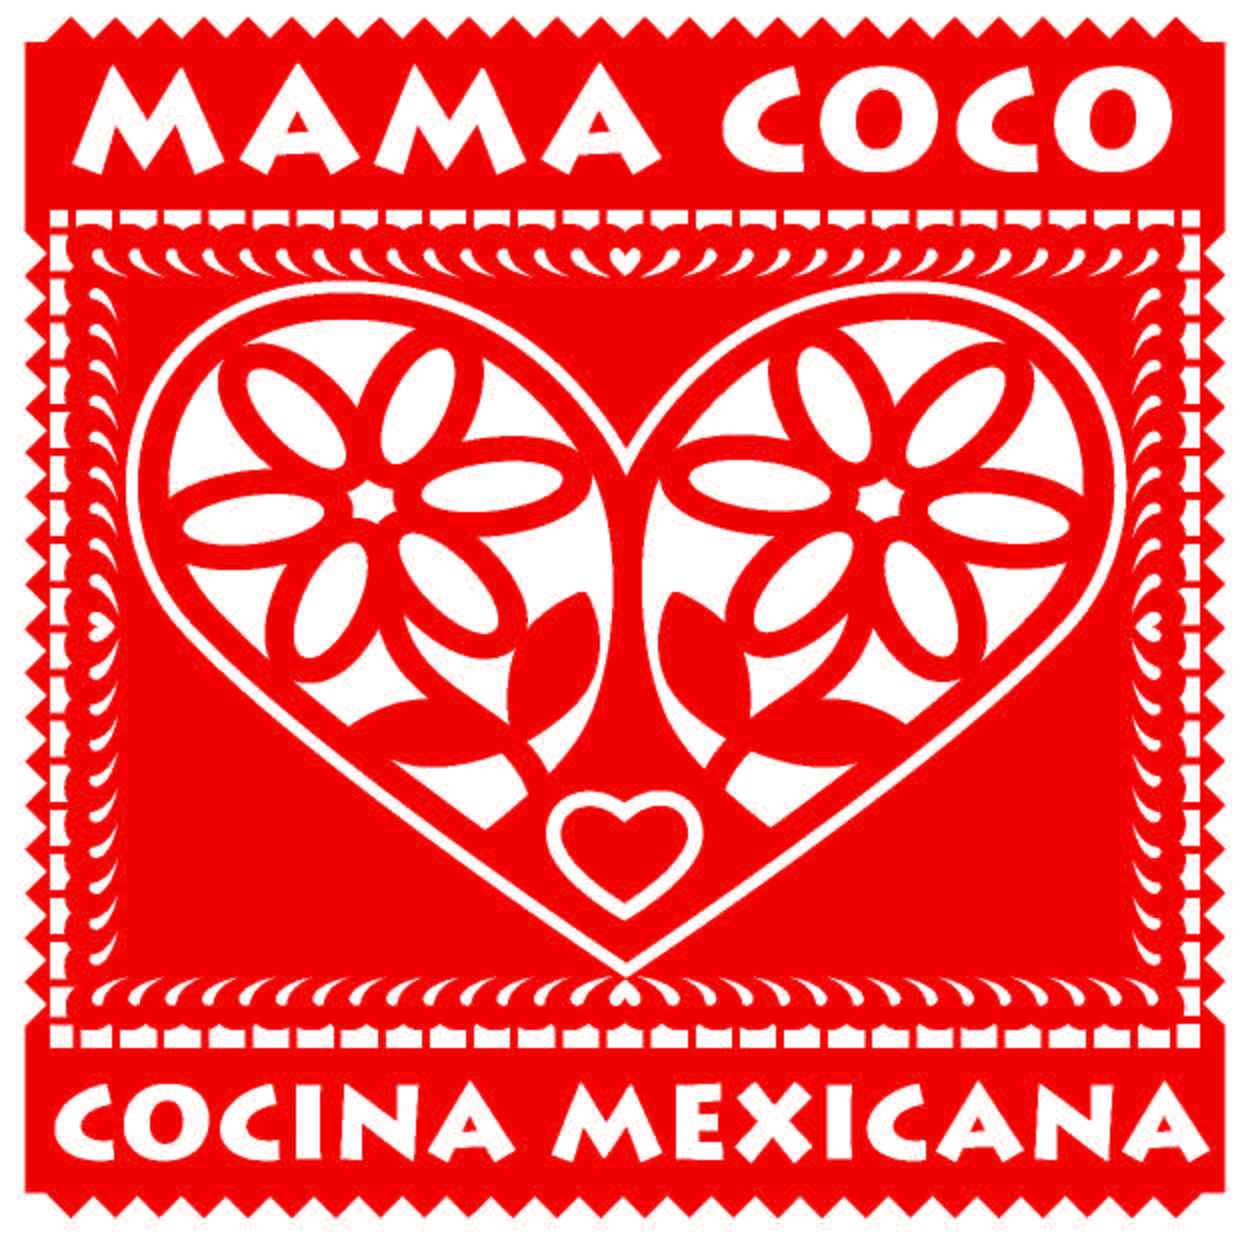 Mamá Coco Cocina Mexicana 